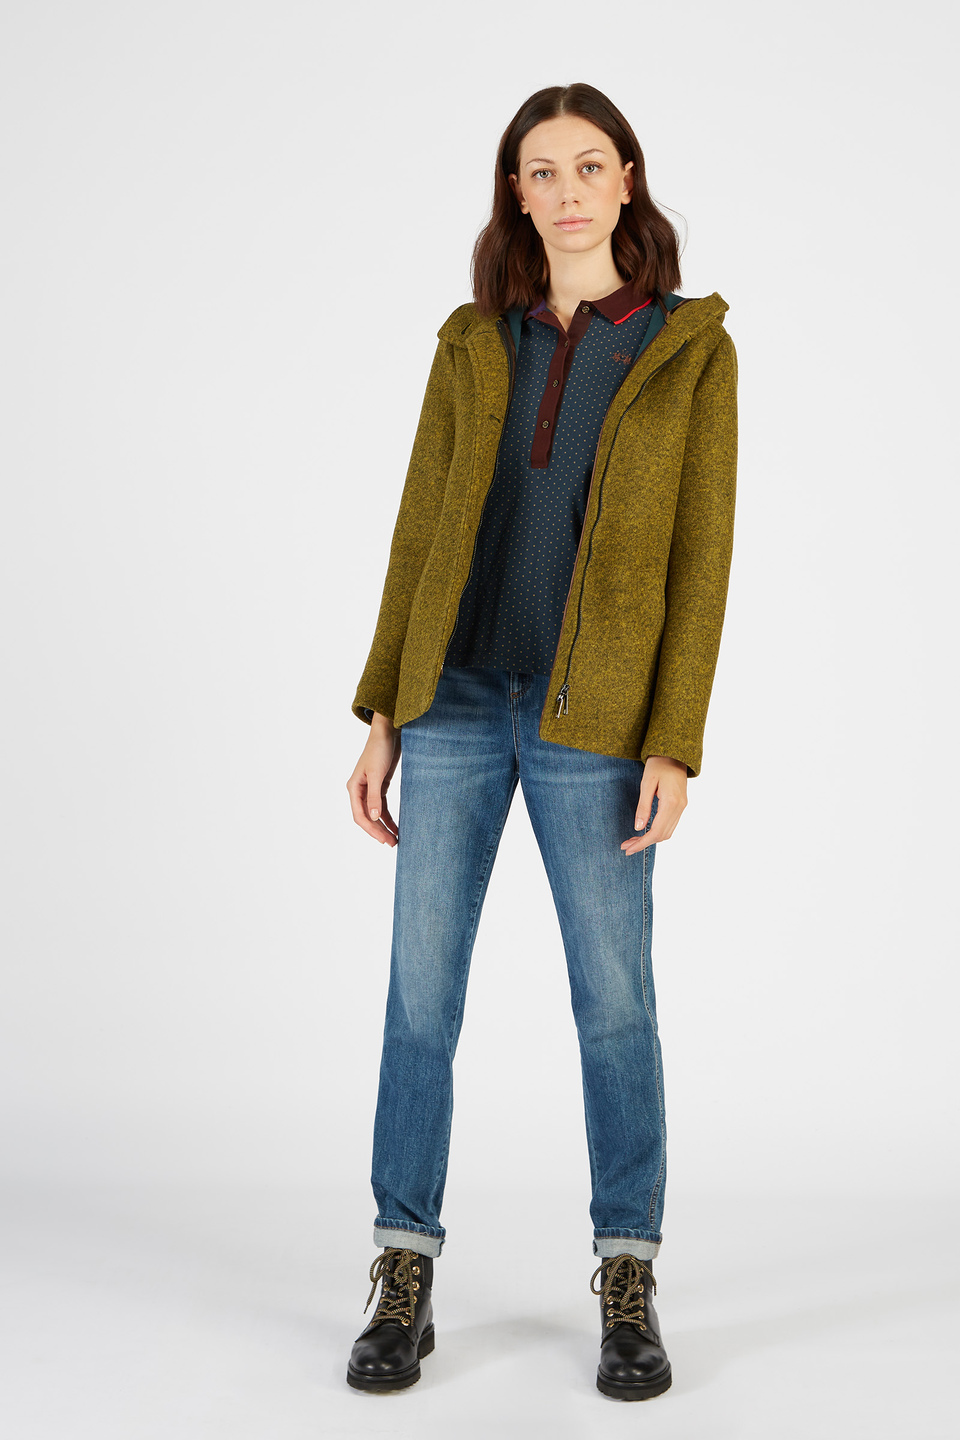 Damen Jacke in Wolloptik mit Kapuze und Reißverschluss | La Martina - Official Online Shop